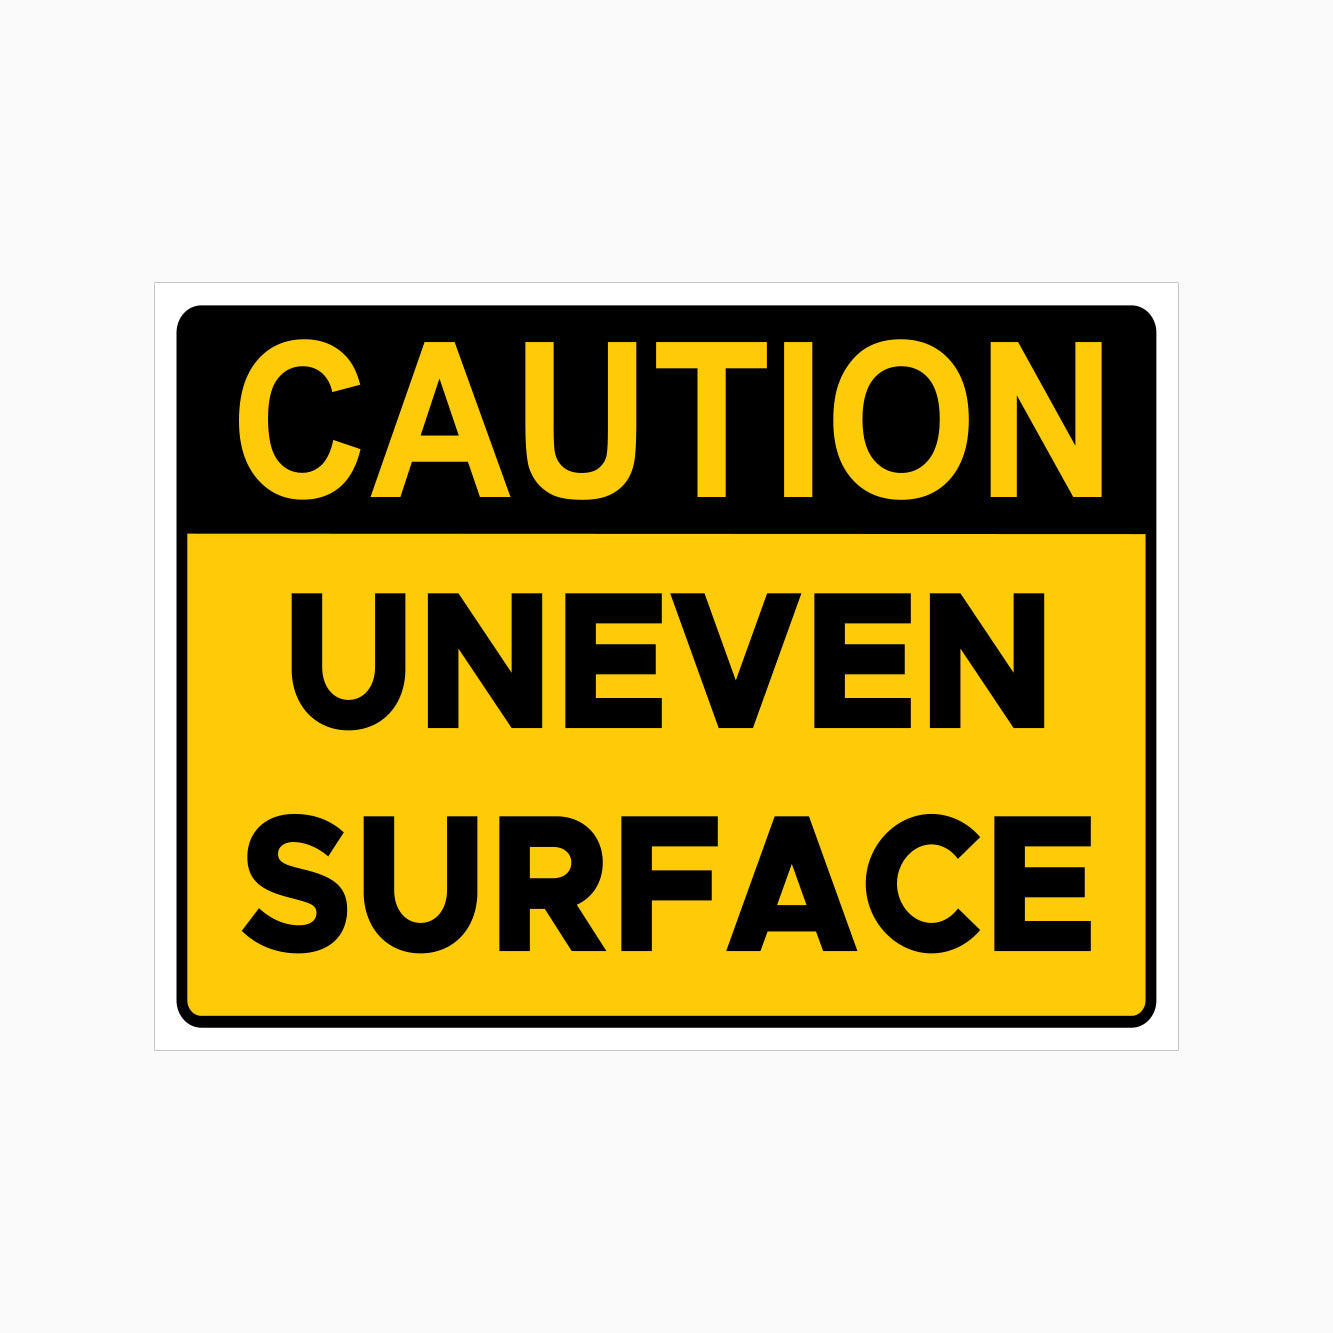 CAUTION UNEVEN SURFACE SIGN